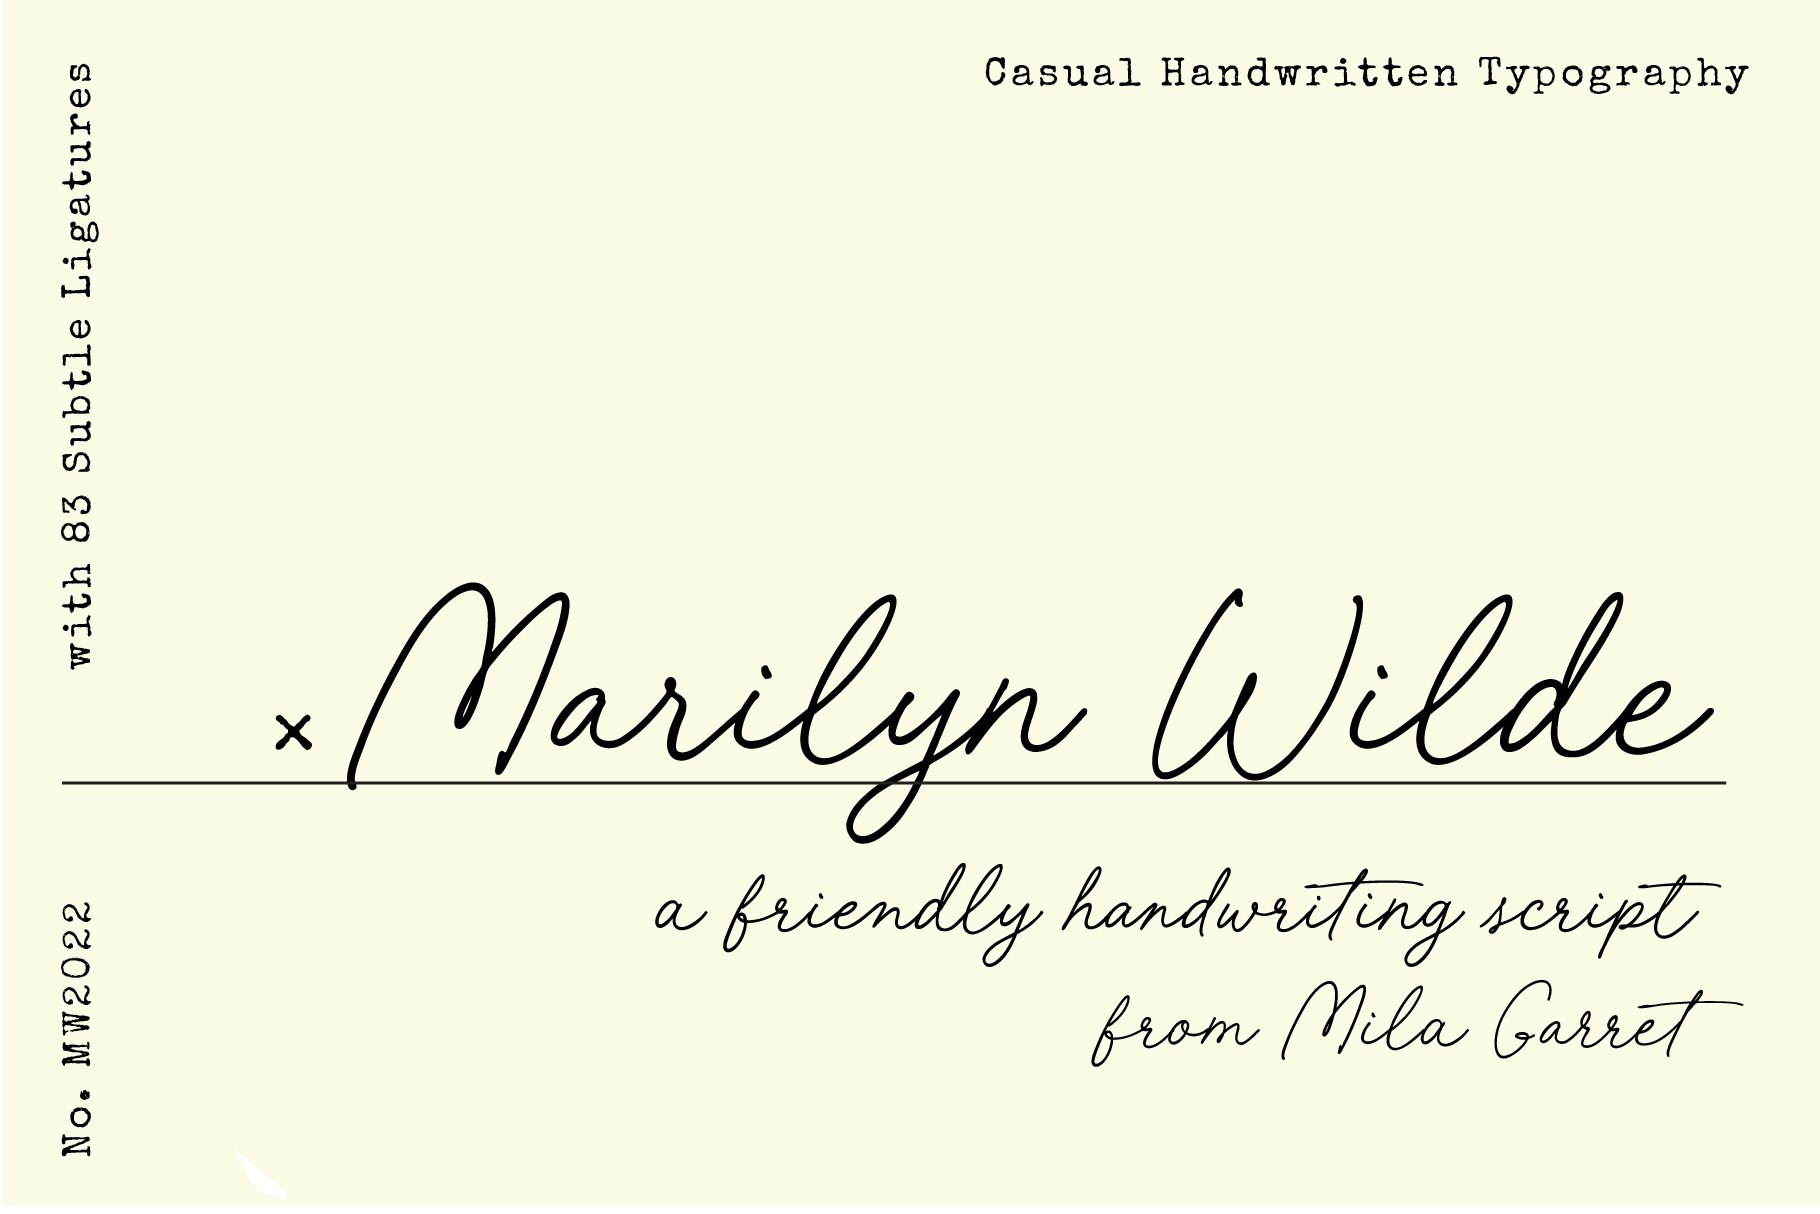 Marilyn Wilde Handwriting Script cover image.